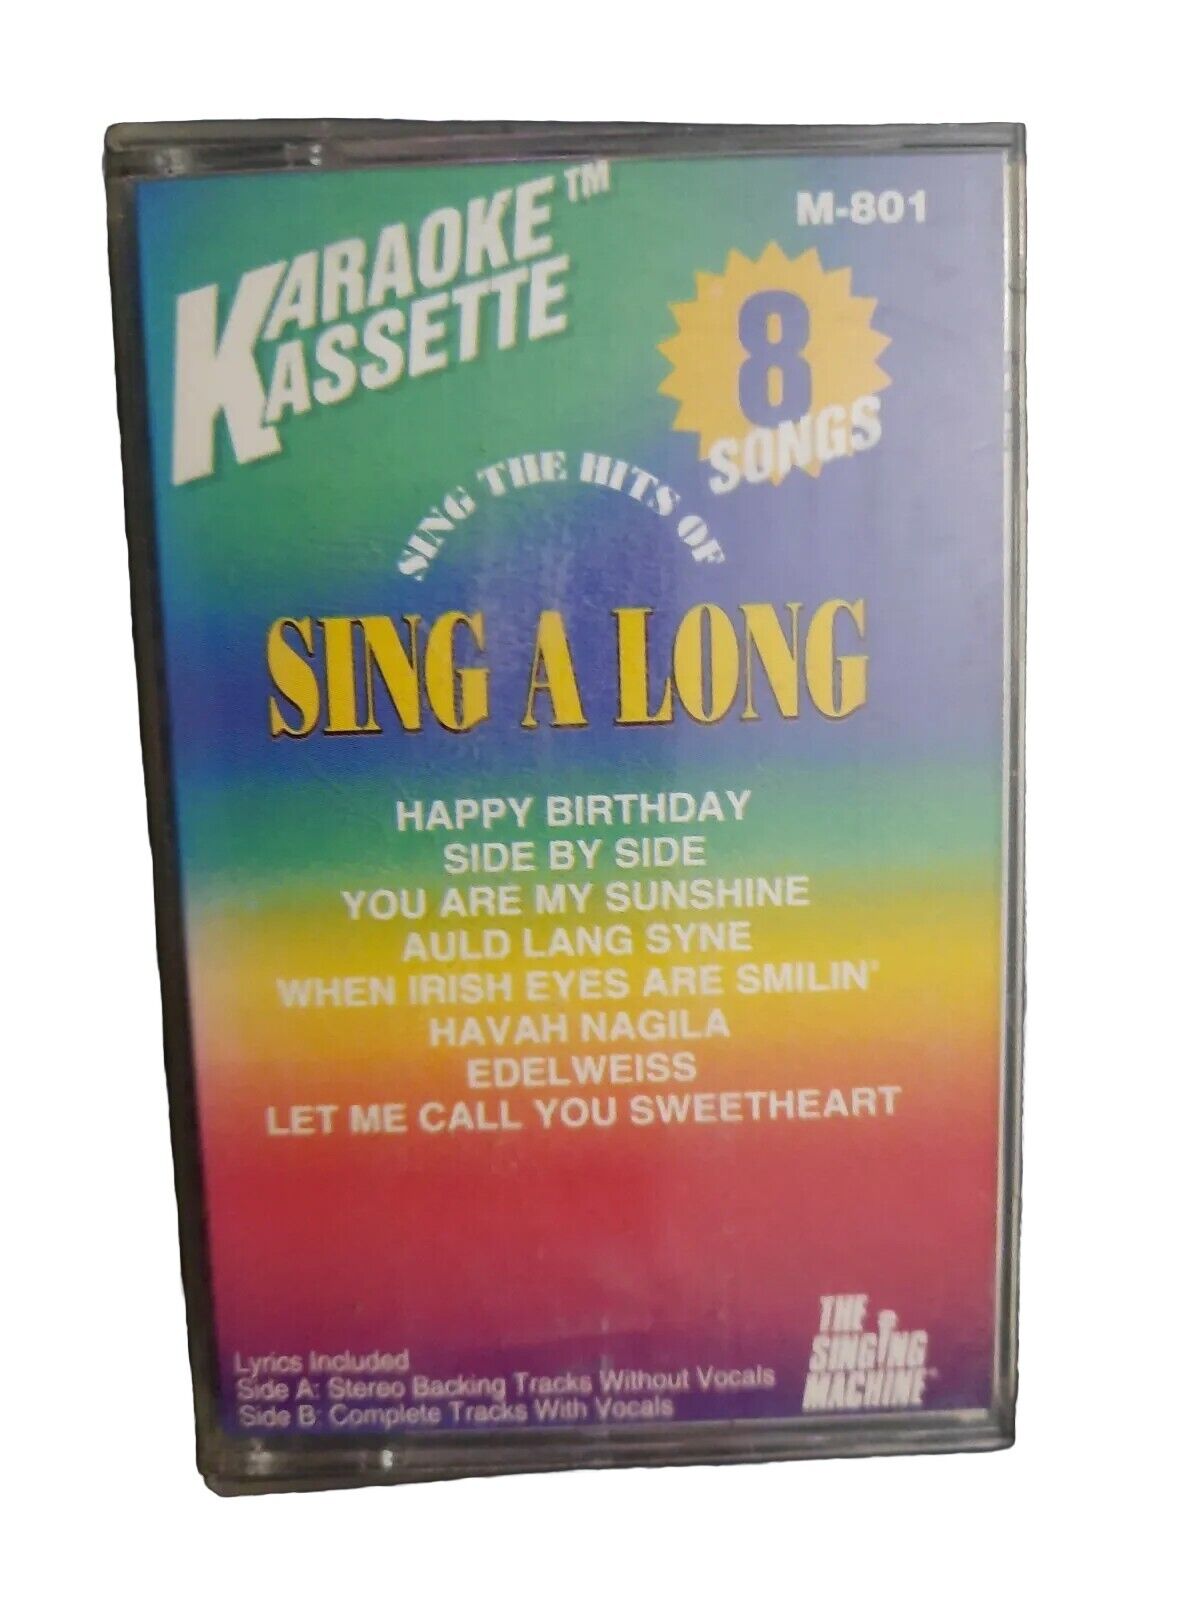 1994 Karaoke Cassette Sing A Long w/Inserts Lyrics, RARE Vintage Singing Machine